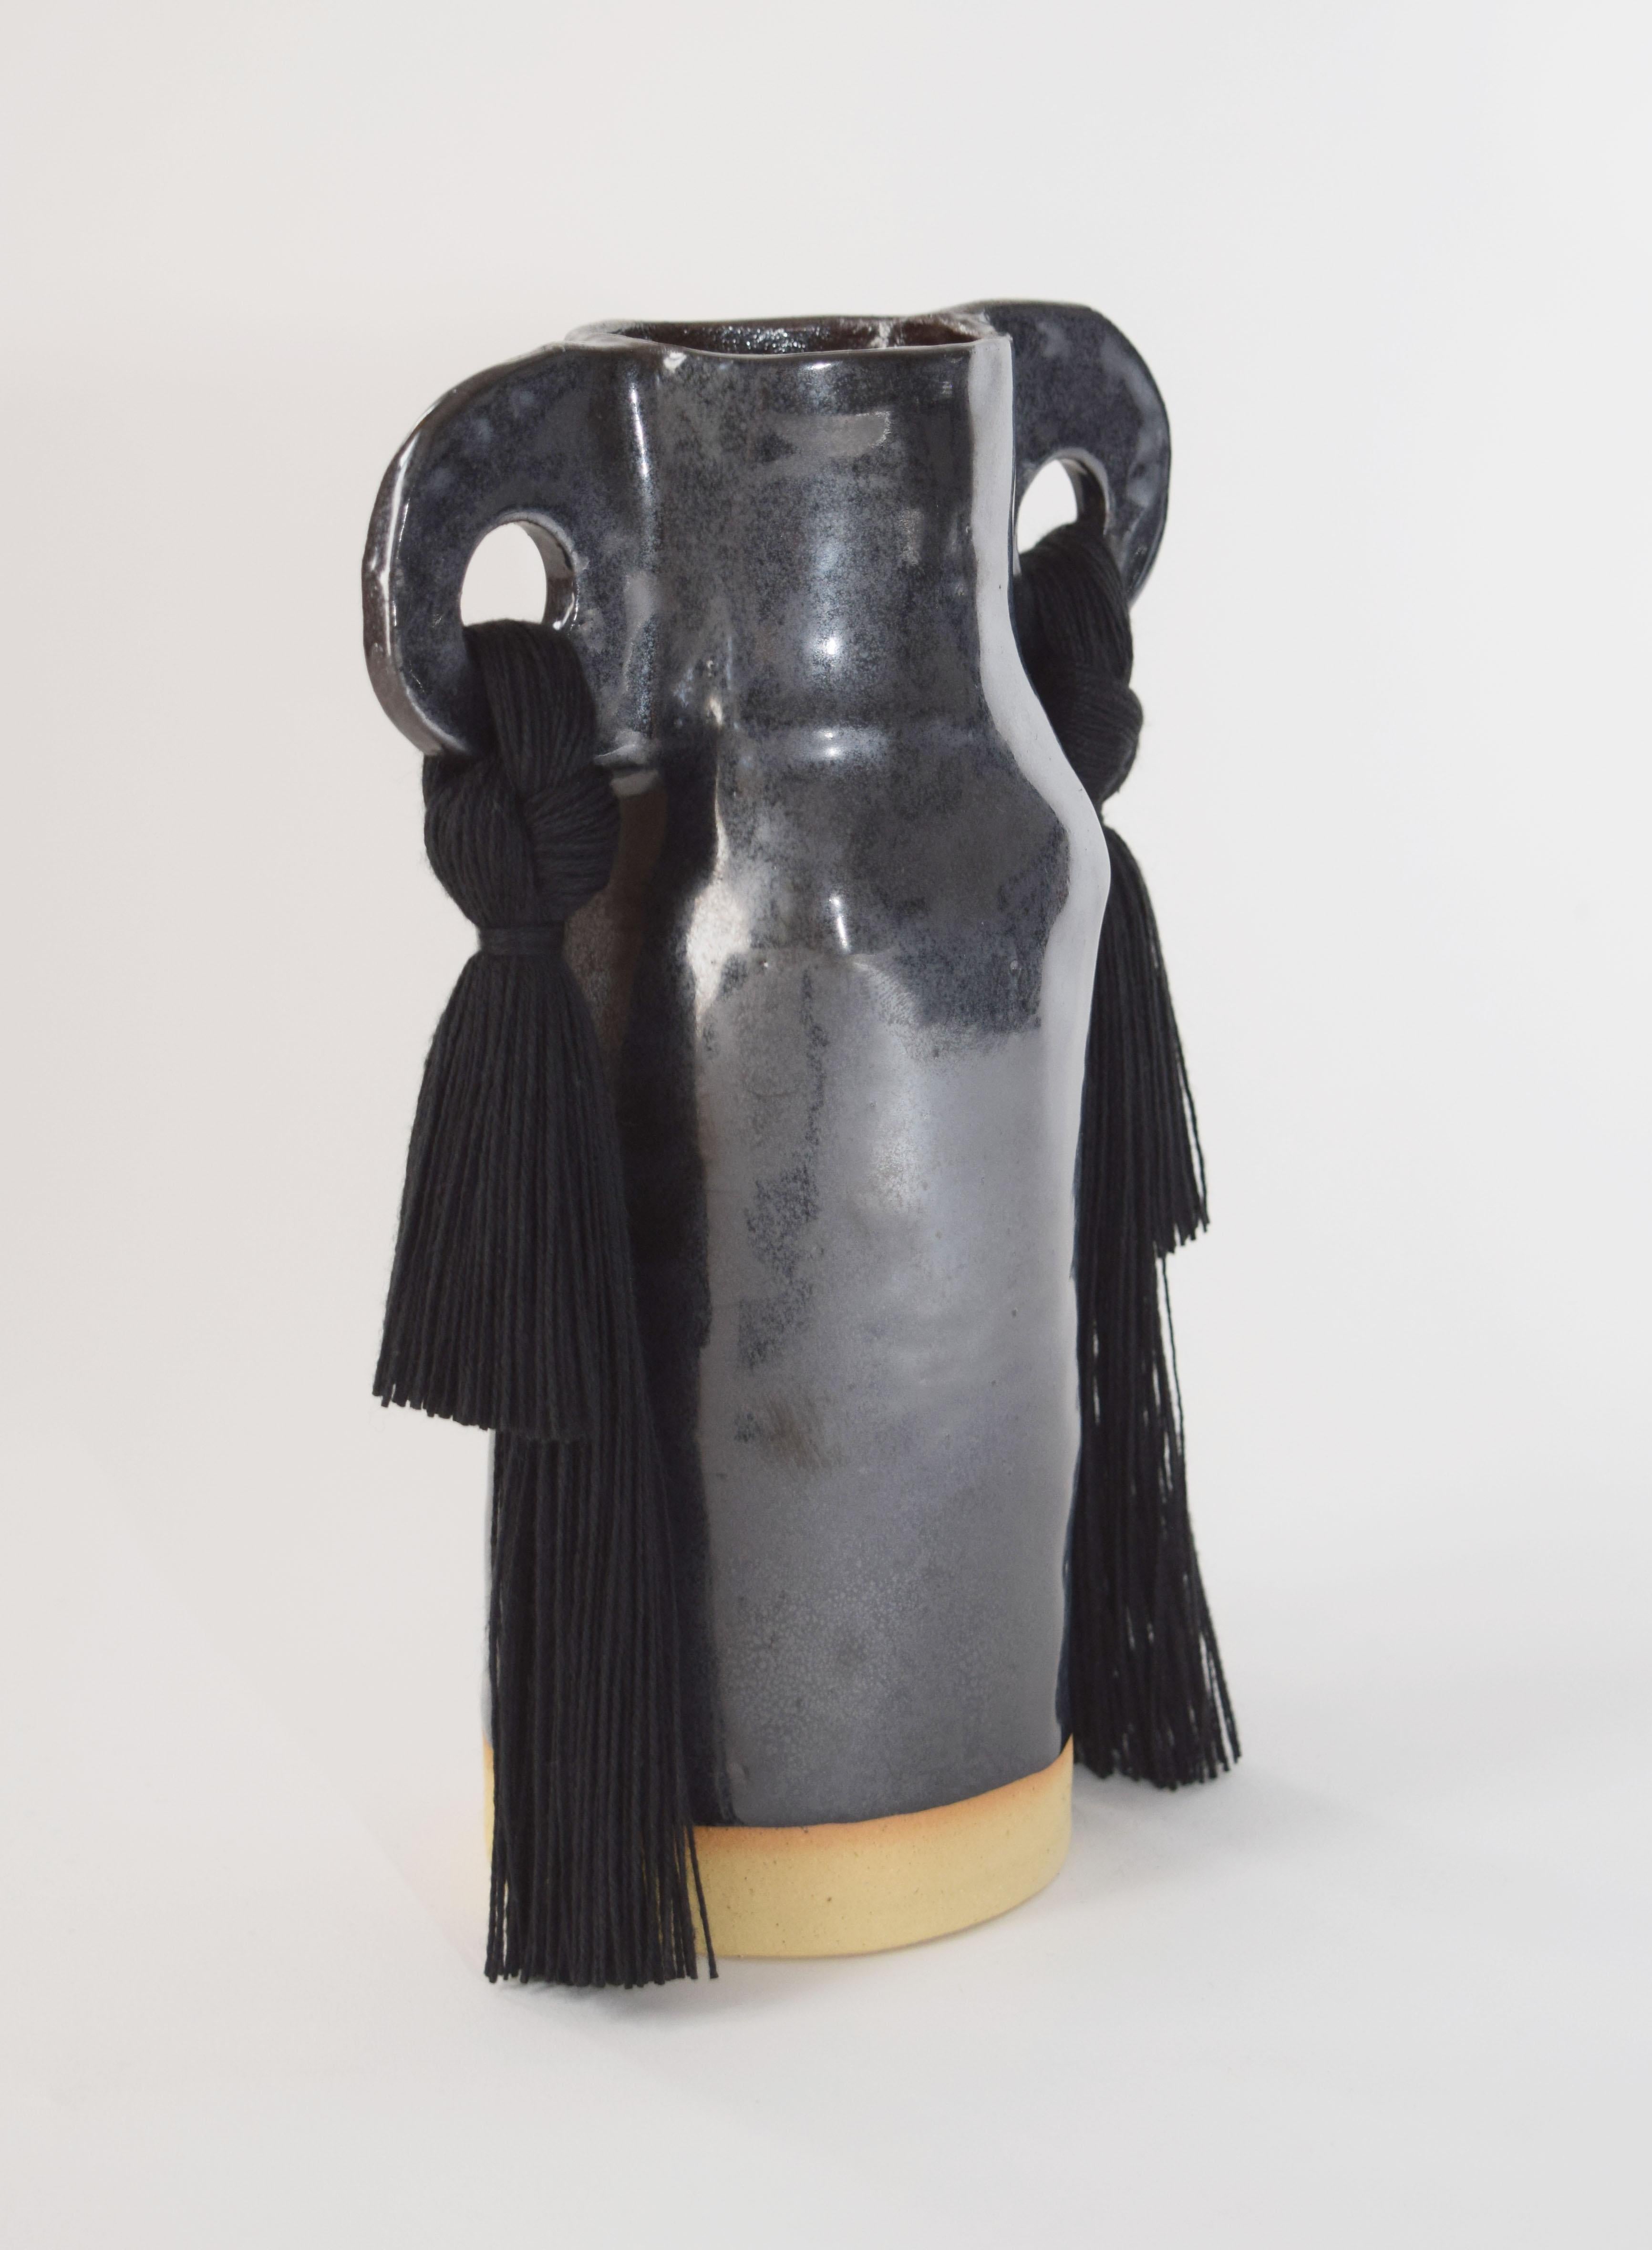 Organic Modern Handmade Ceramic Vase #606 in Black Glaze with Cotton Fringe Details For Sale